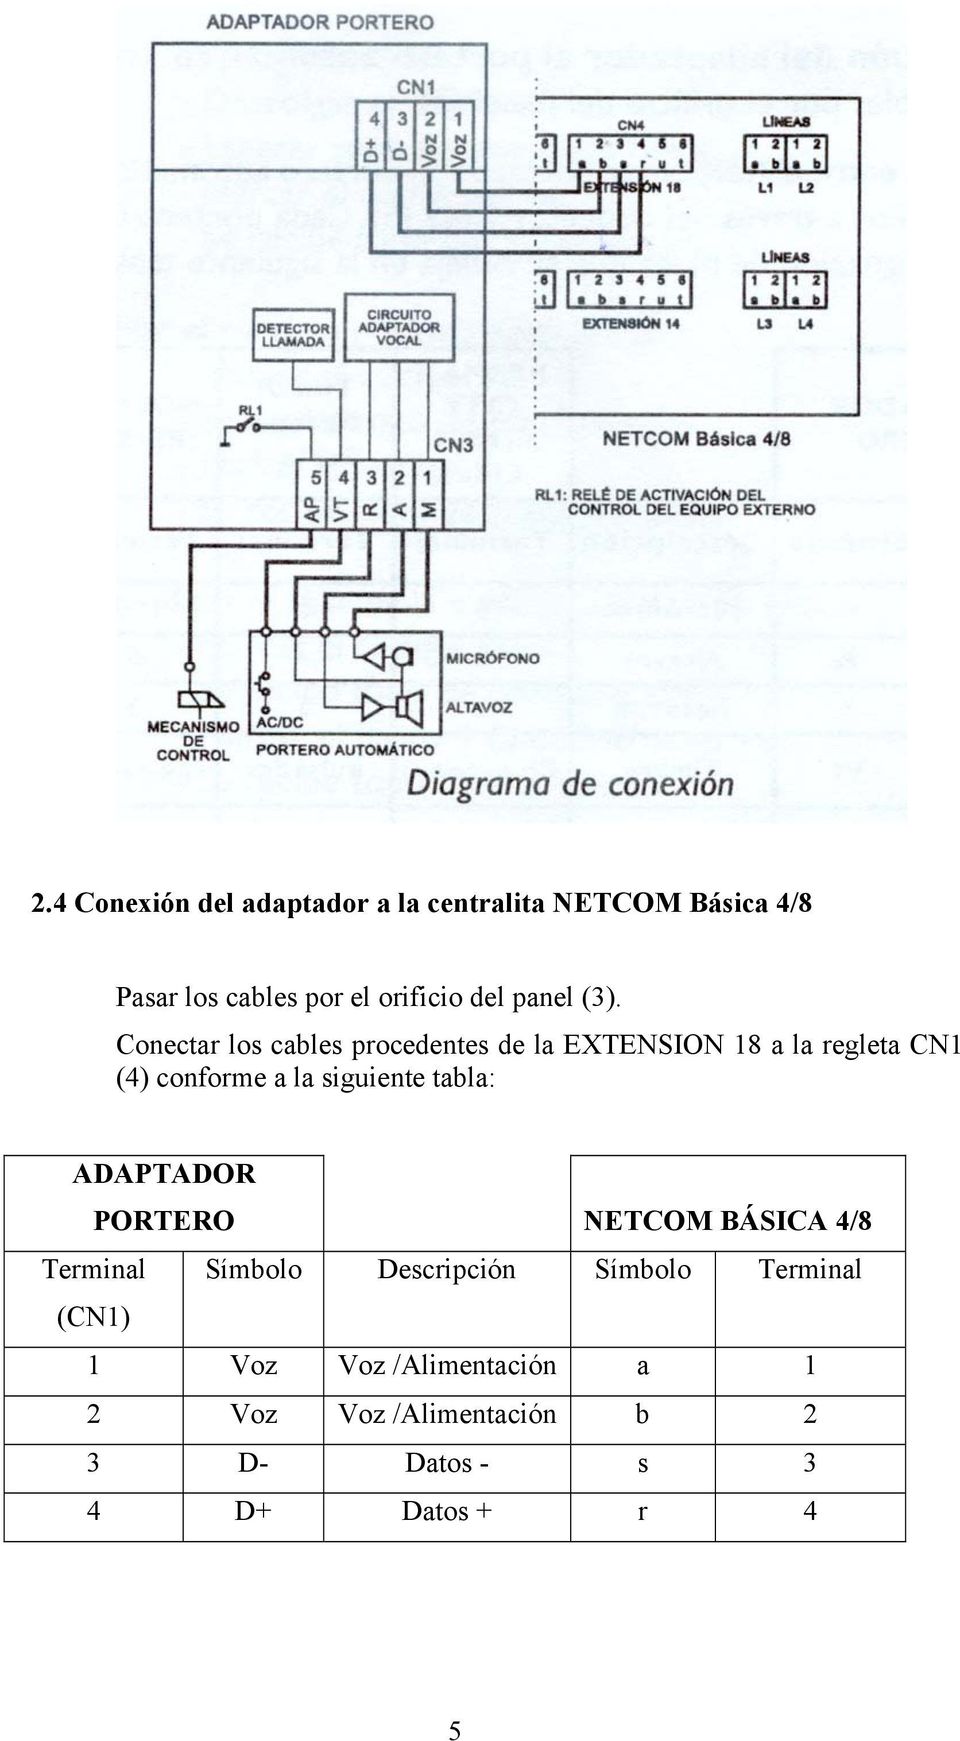 Conectar los cables procedentes de la EXTENSION 18 a la regleta CN1 (4) conforme a la siguiente